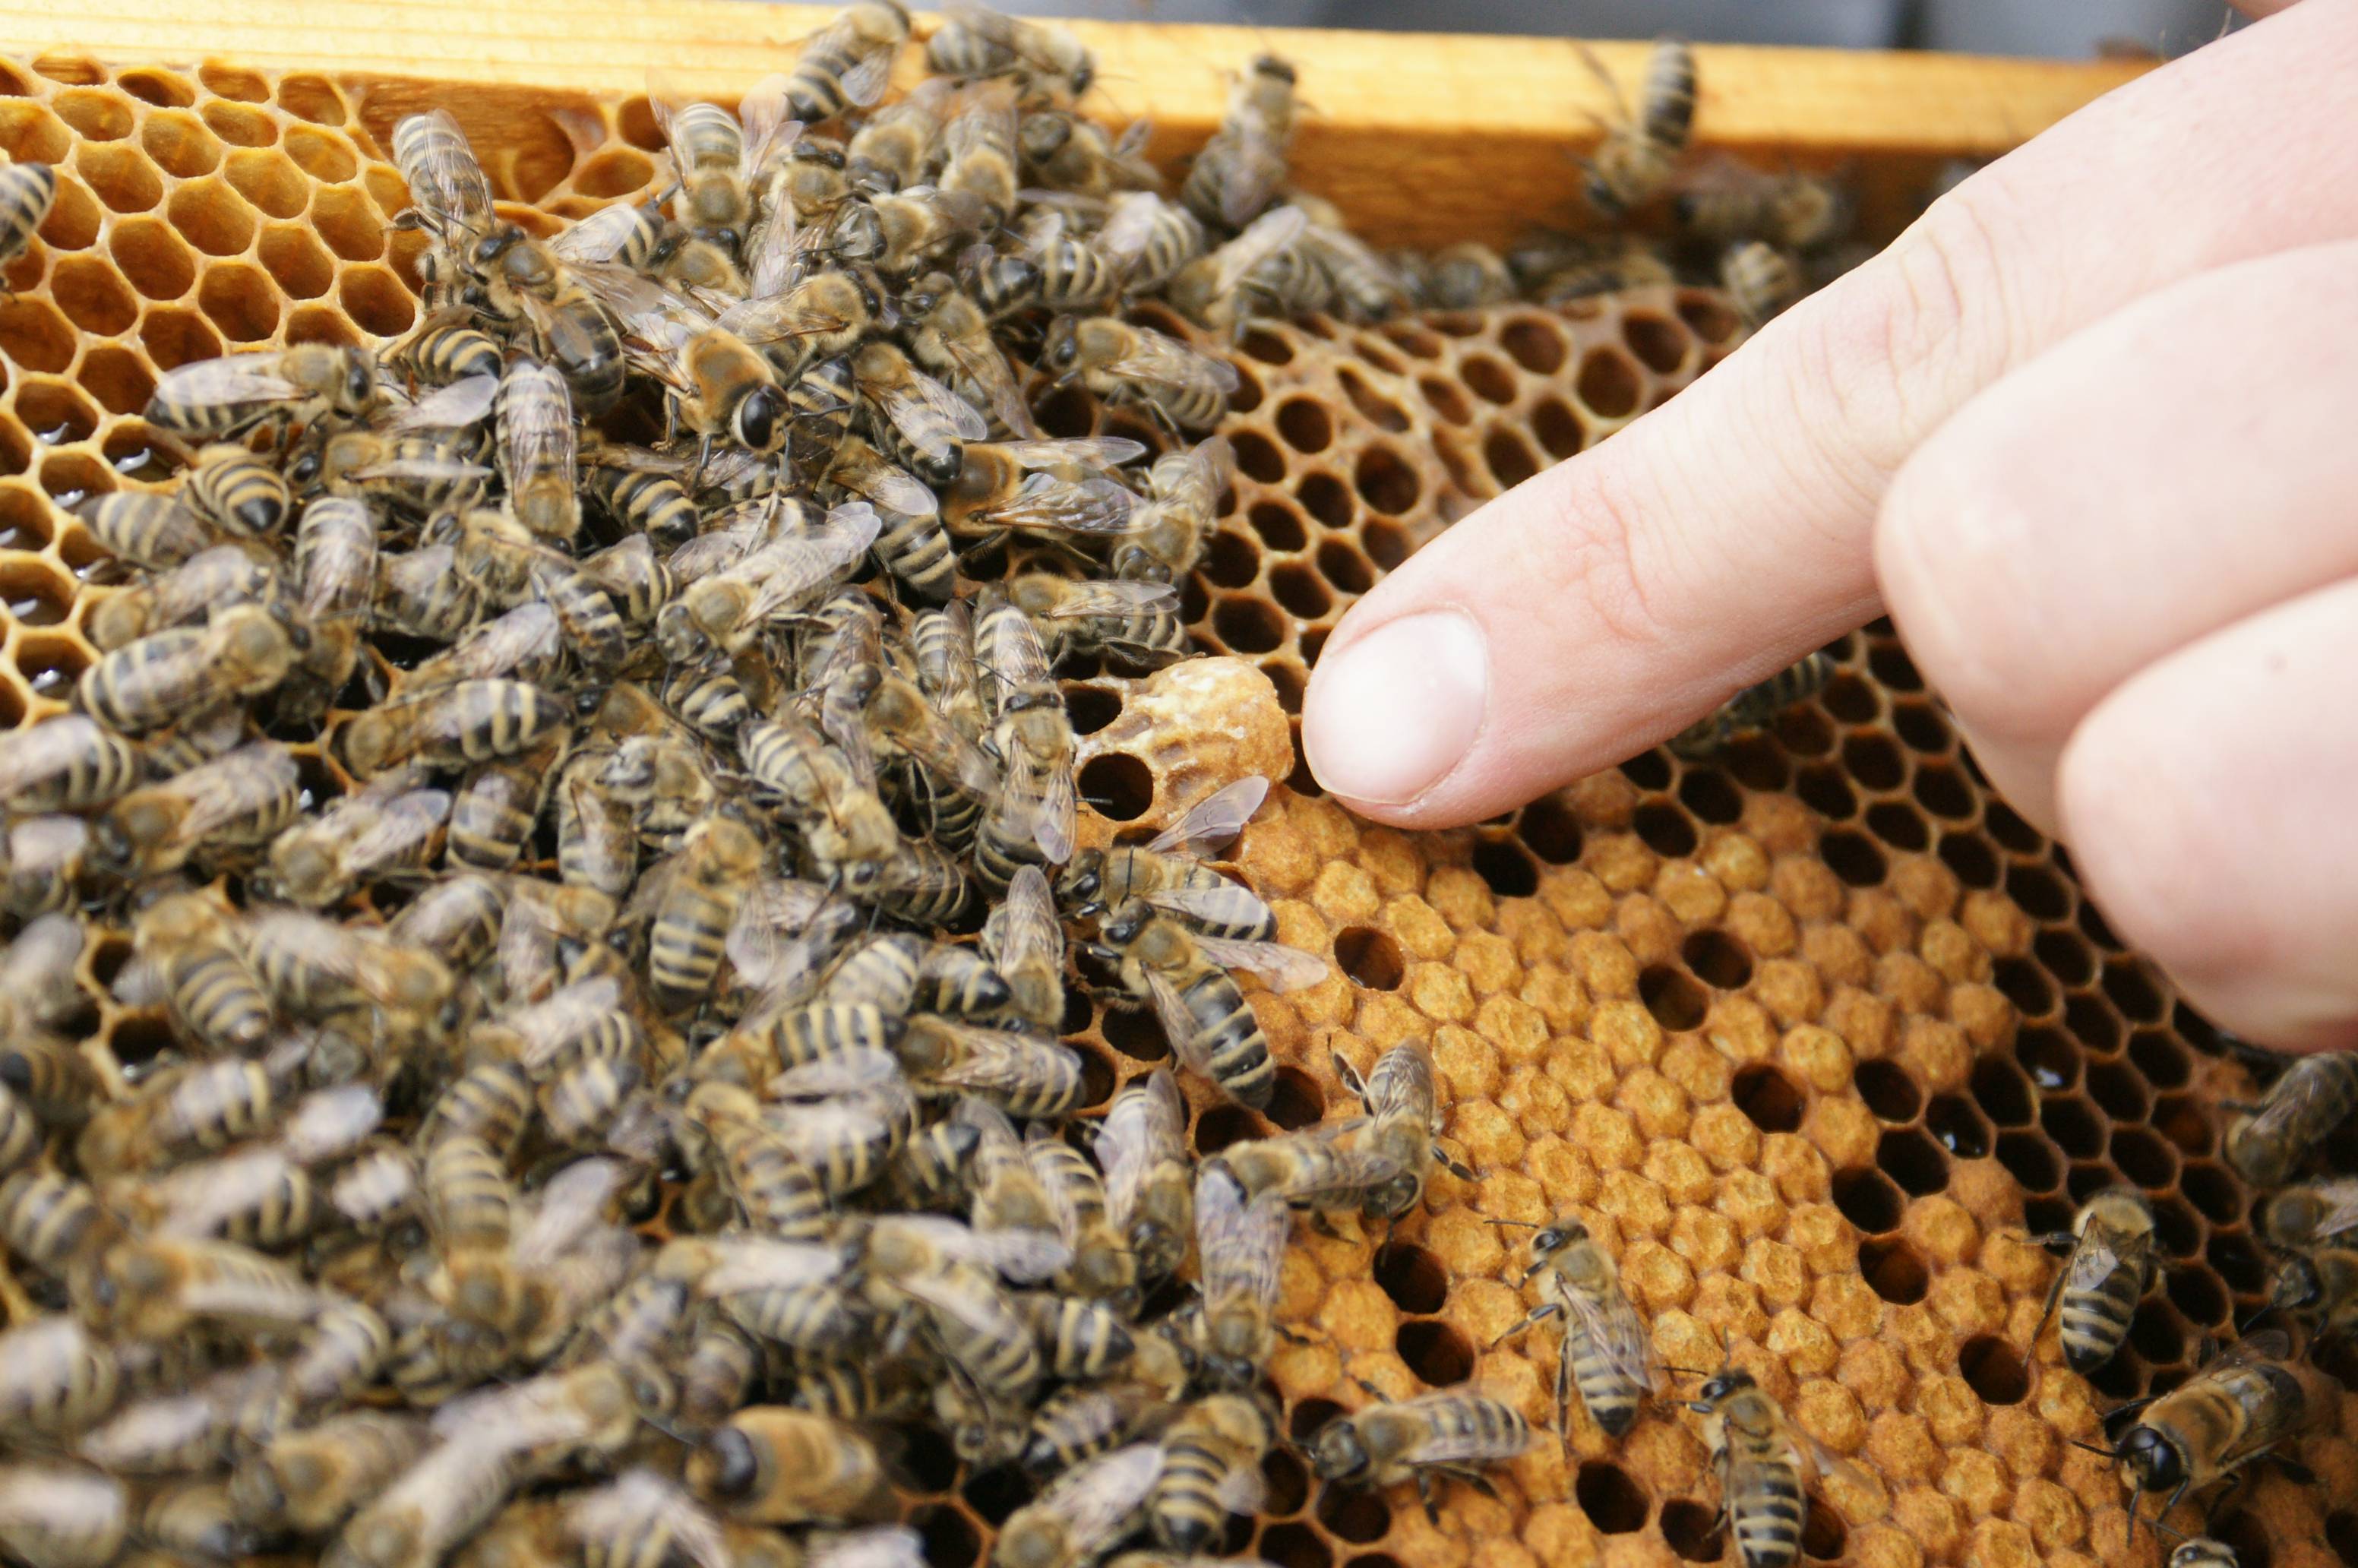 Подмор пчелиный: лечебные свойства, как принимать, польза и вред